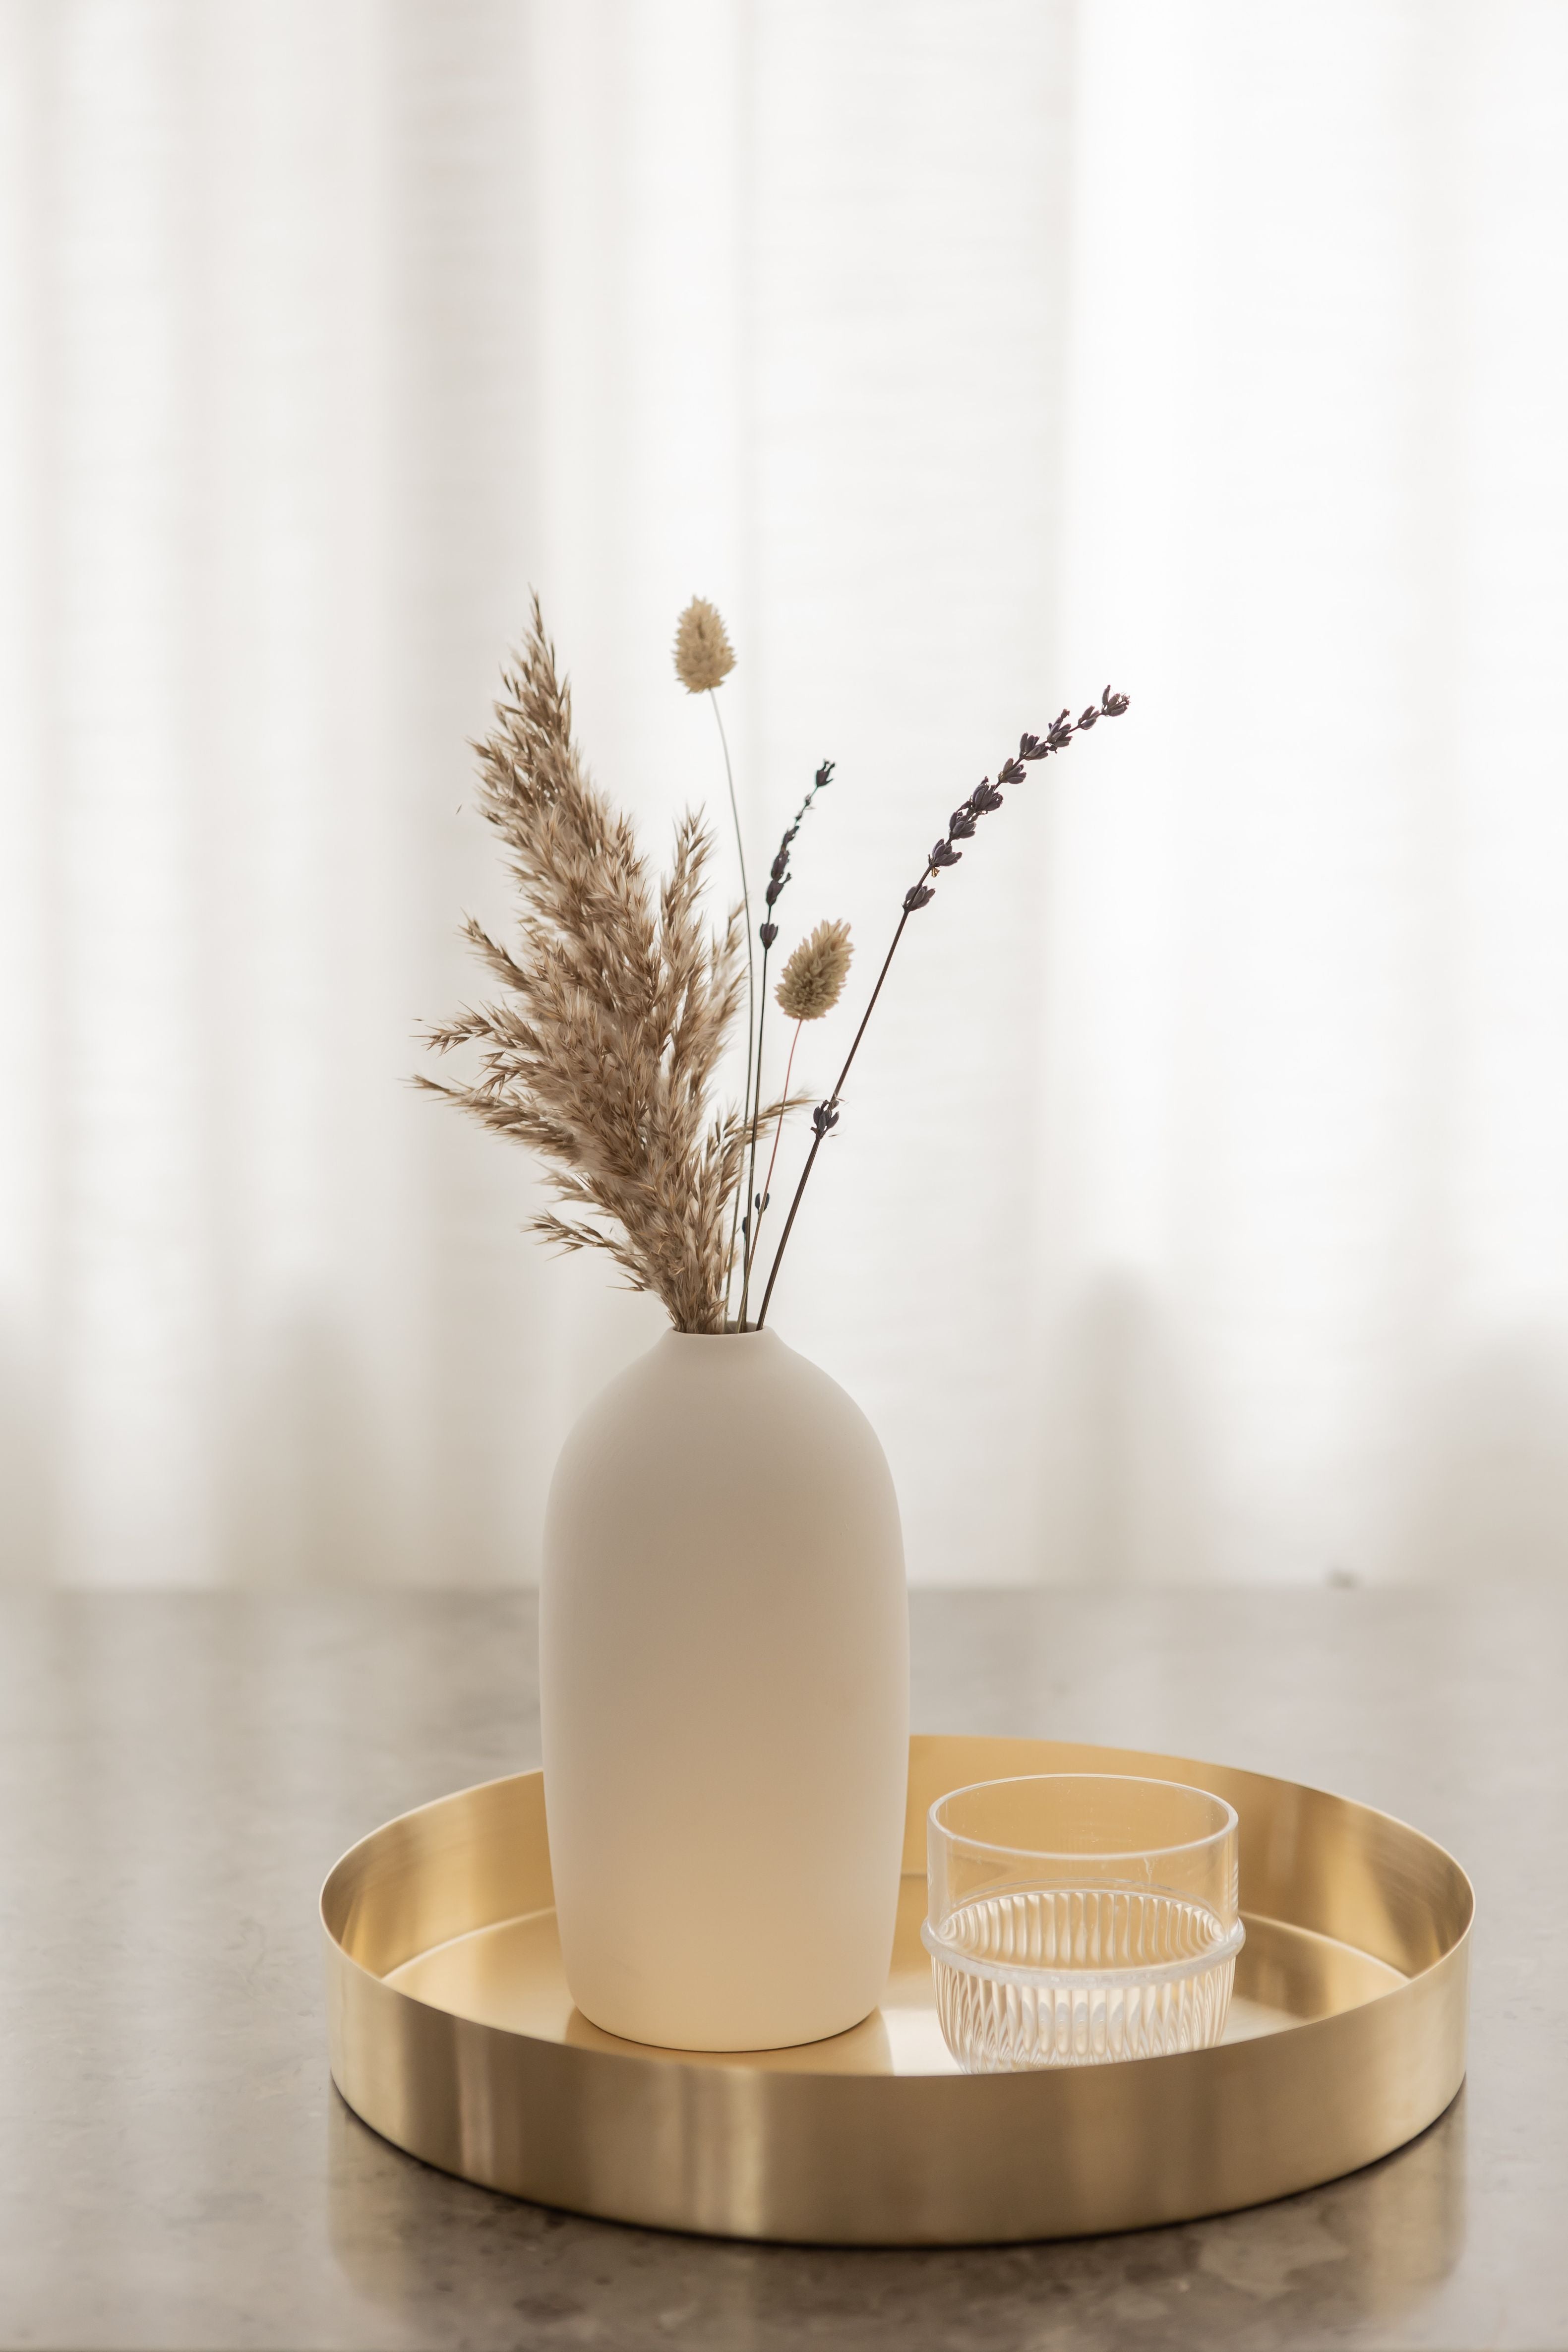 Malling Living Vase brut 20 cm, blanc